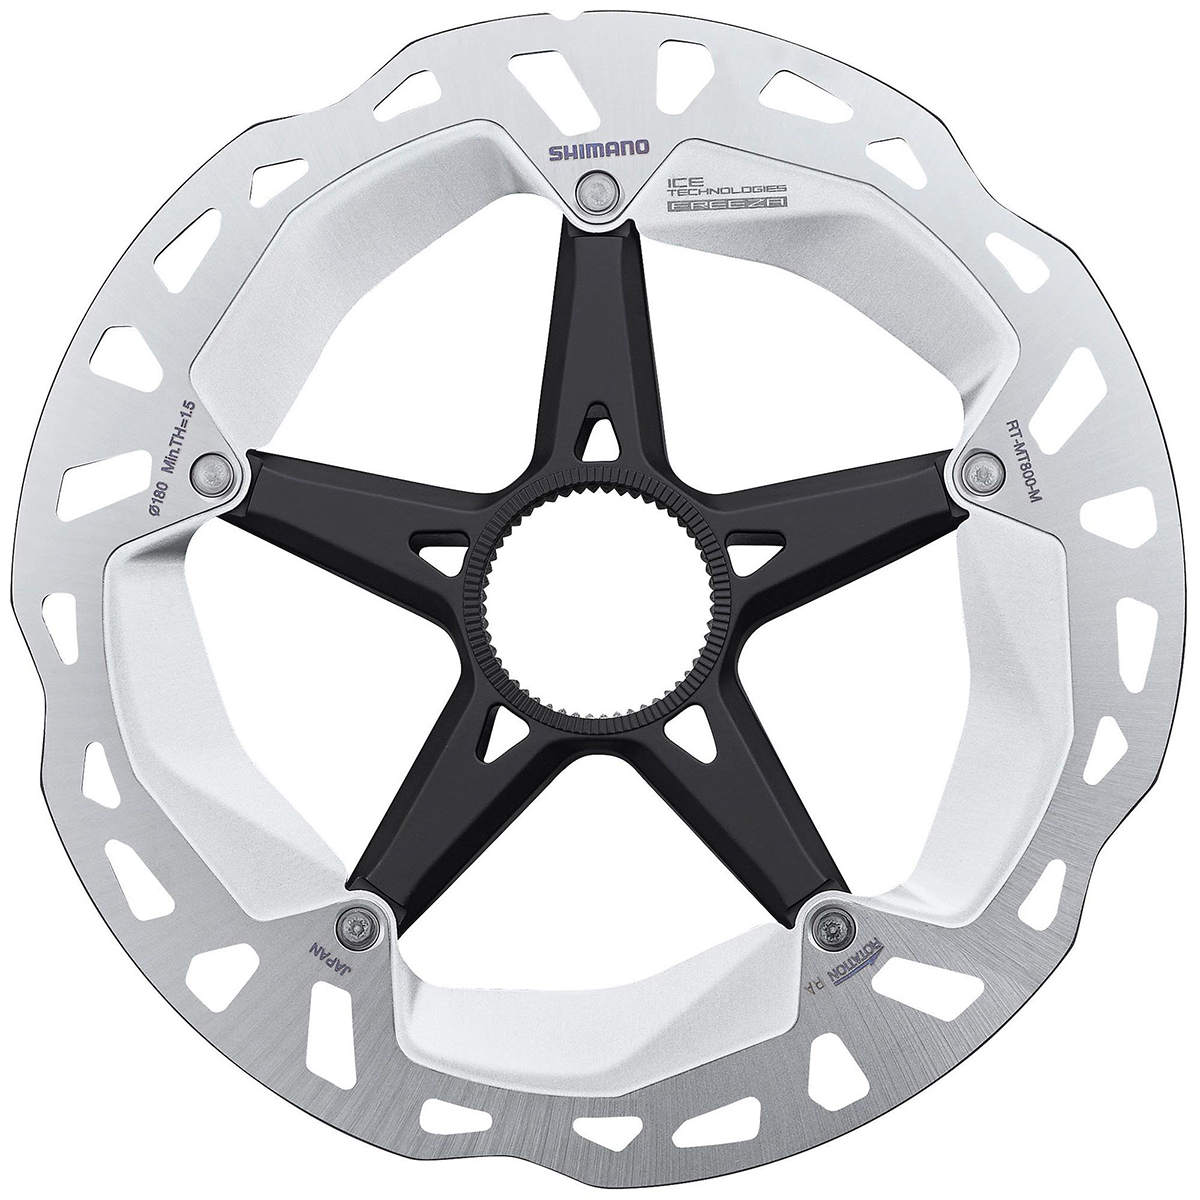 Mount Bank Persoonlijk bedrijf Shimano XT MT800 Ice-Tec Centrelock Rotor | Merlin Cycles